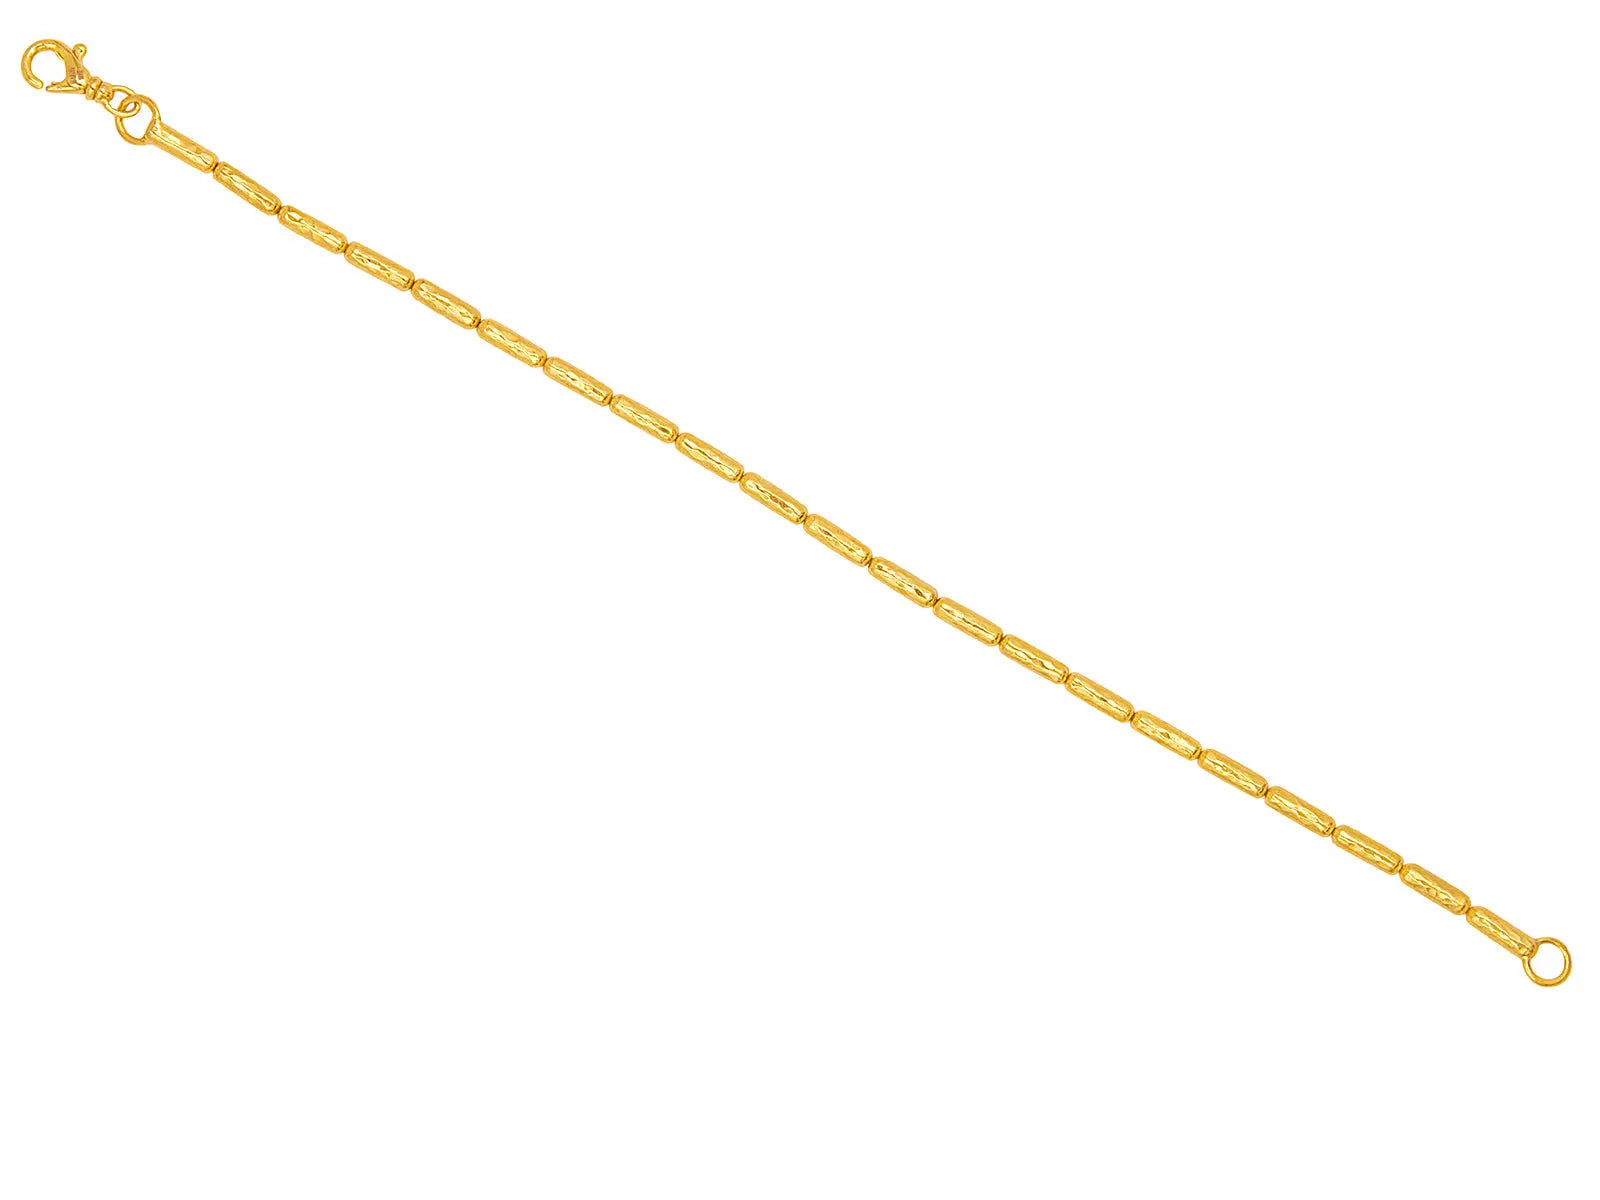 GURHAN Vertigo Gold Single Strand Bracelet, with No Stone - Squash Blossom Vail